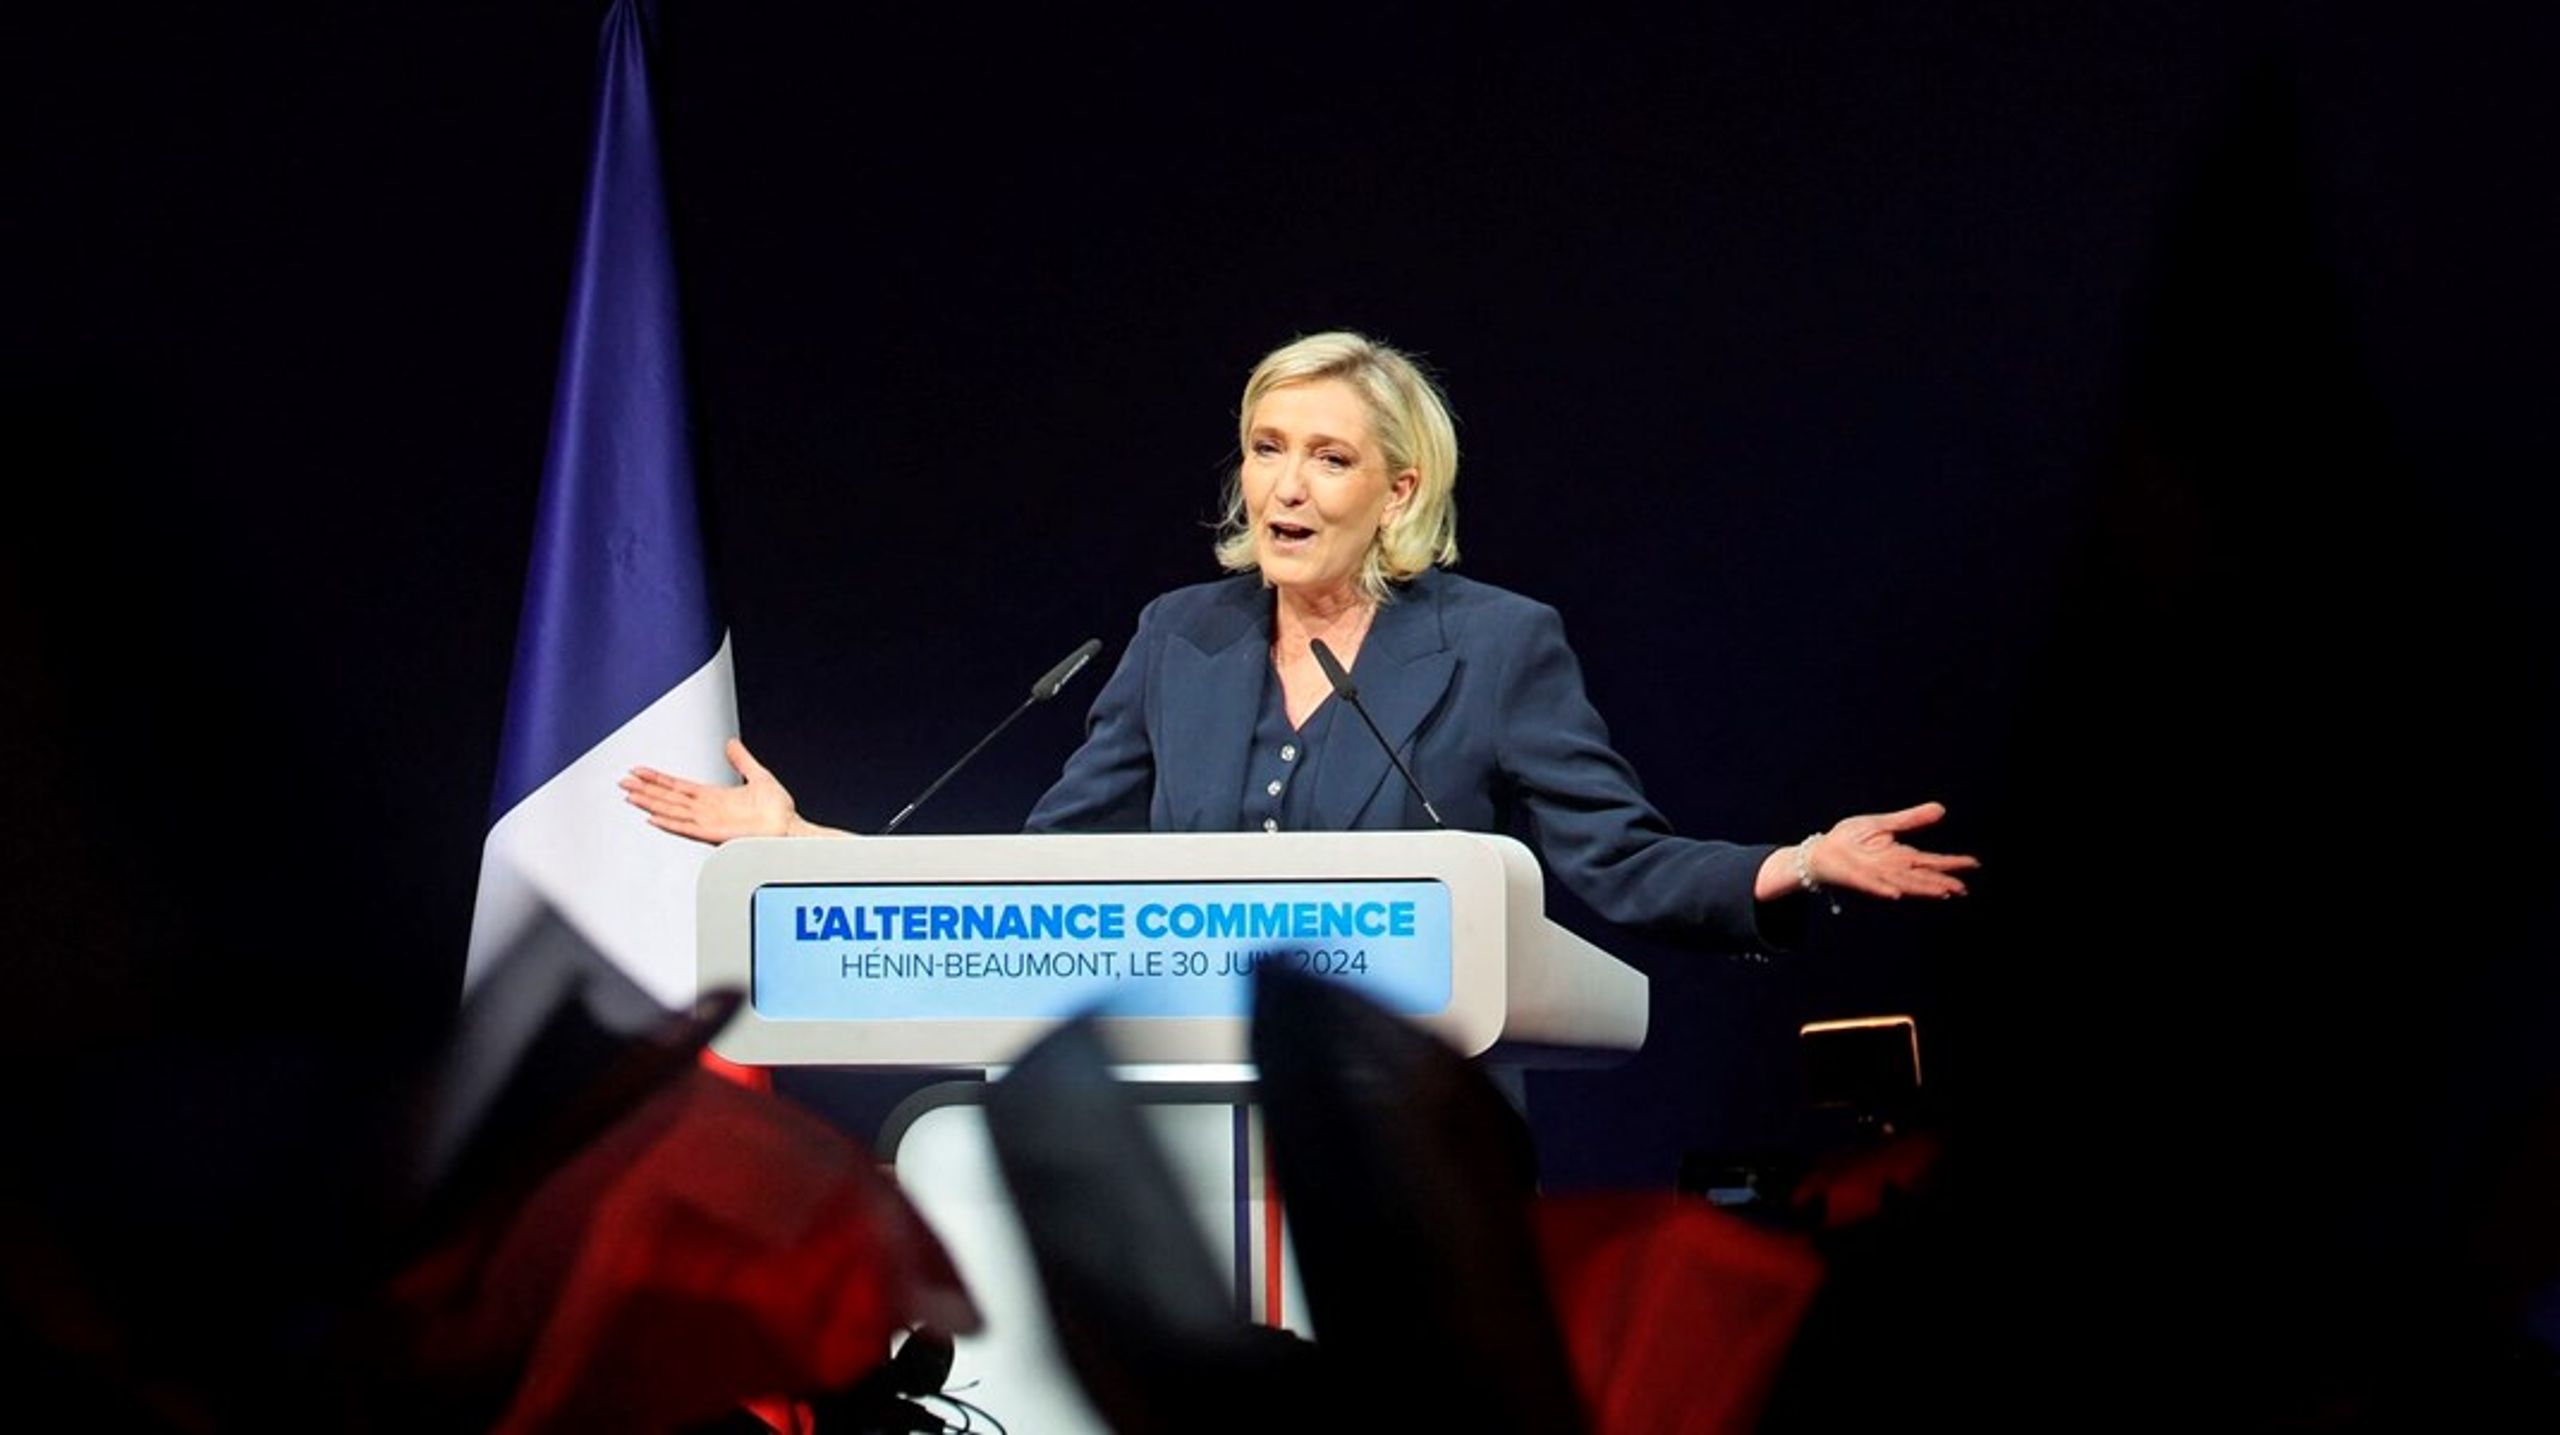 National Samling med Marine Le Pen i front fik søndag flest stemmer, da franskmændene stemte for første gang til parlamentsvalget. Det hele skal afgøres på søndag.